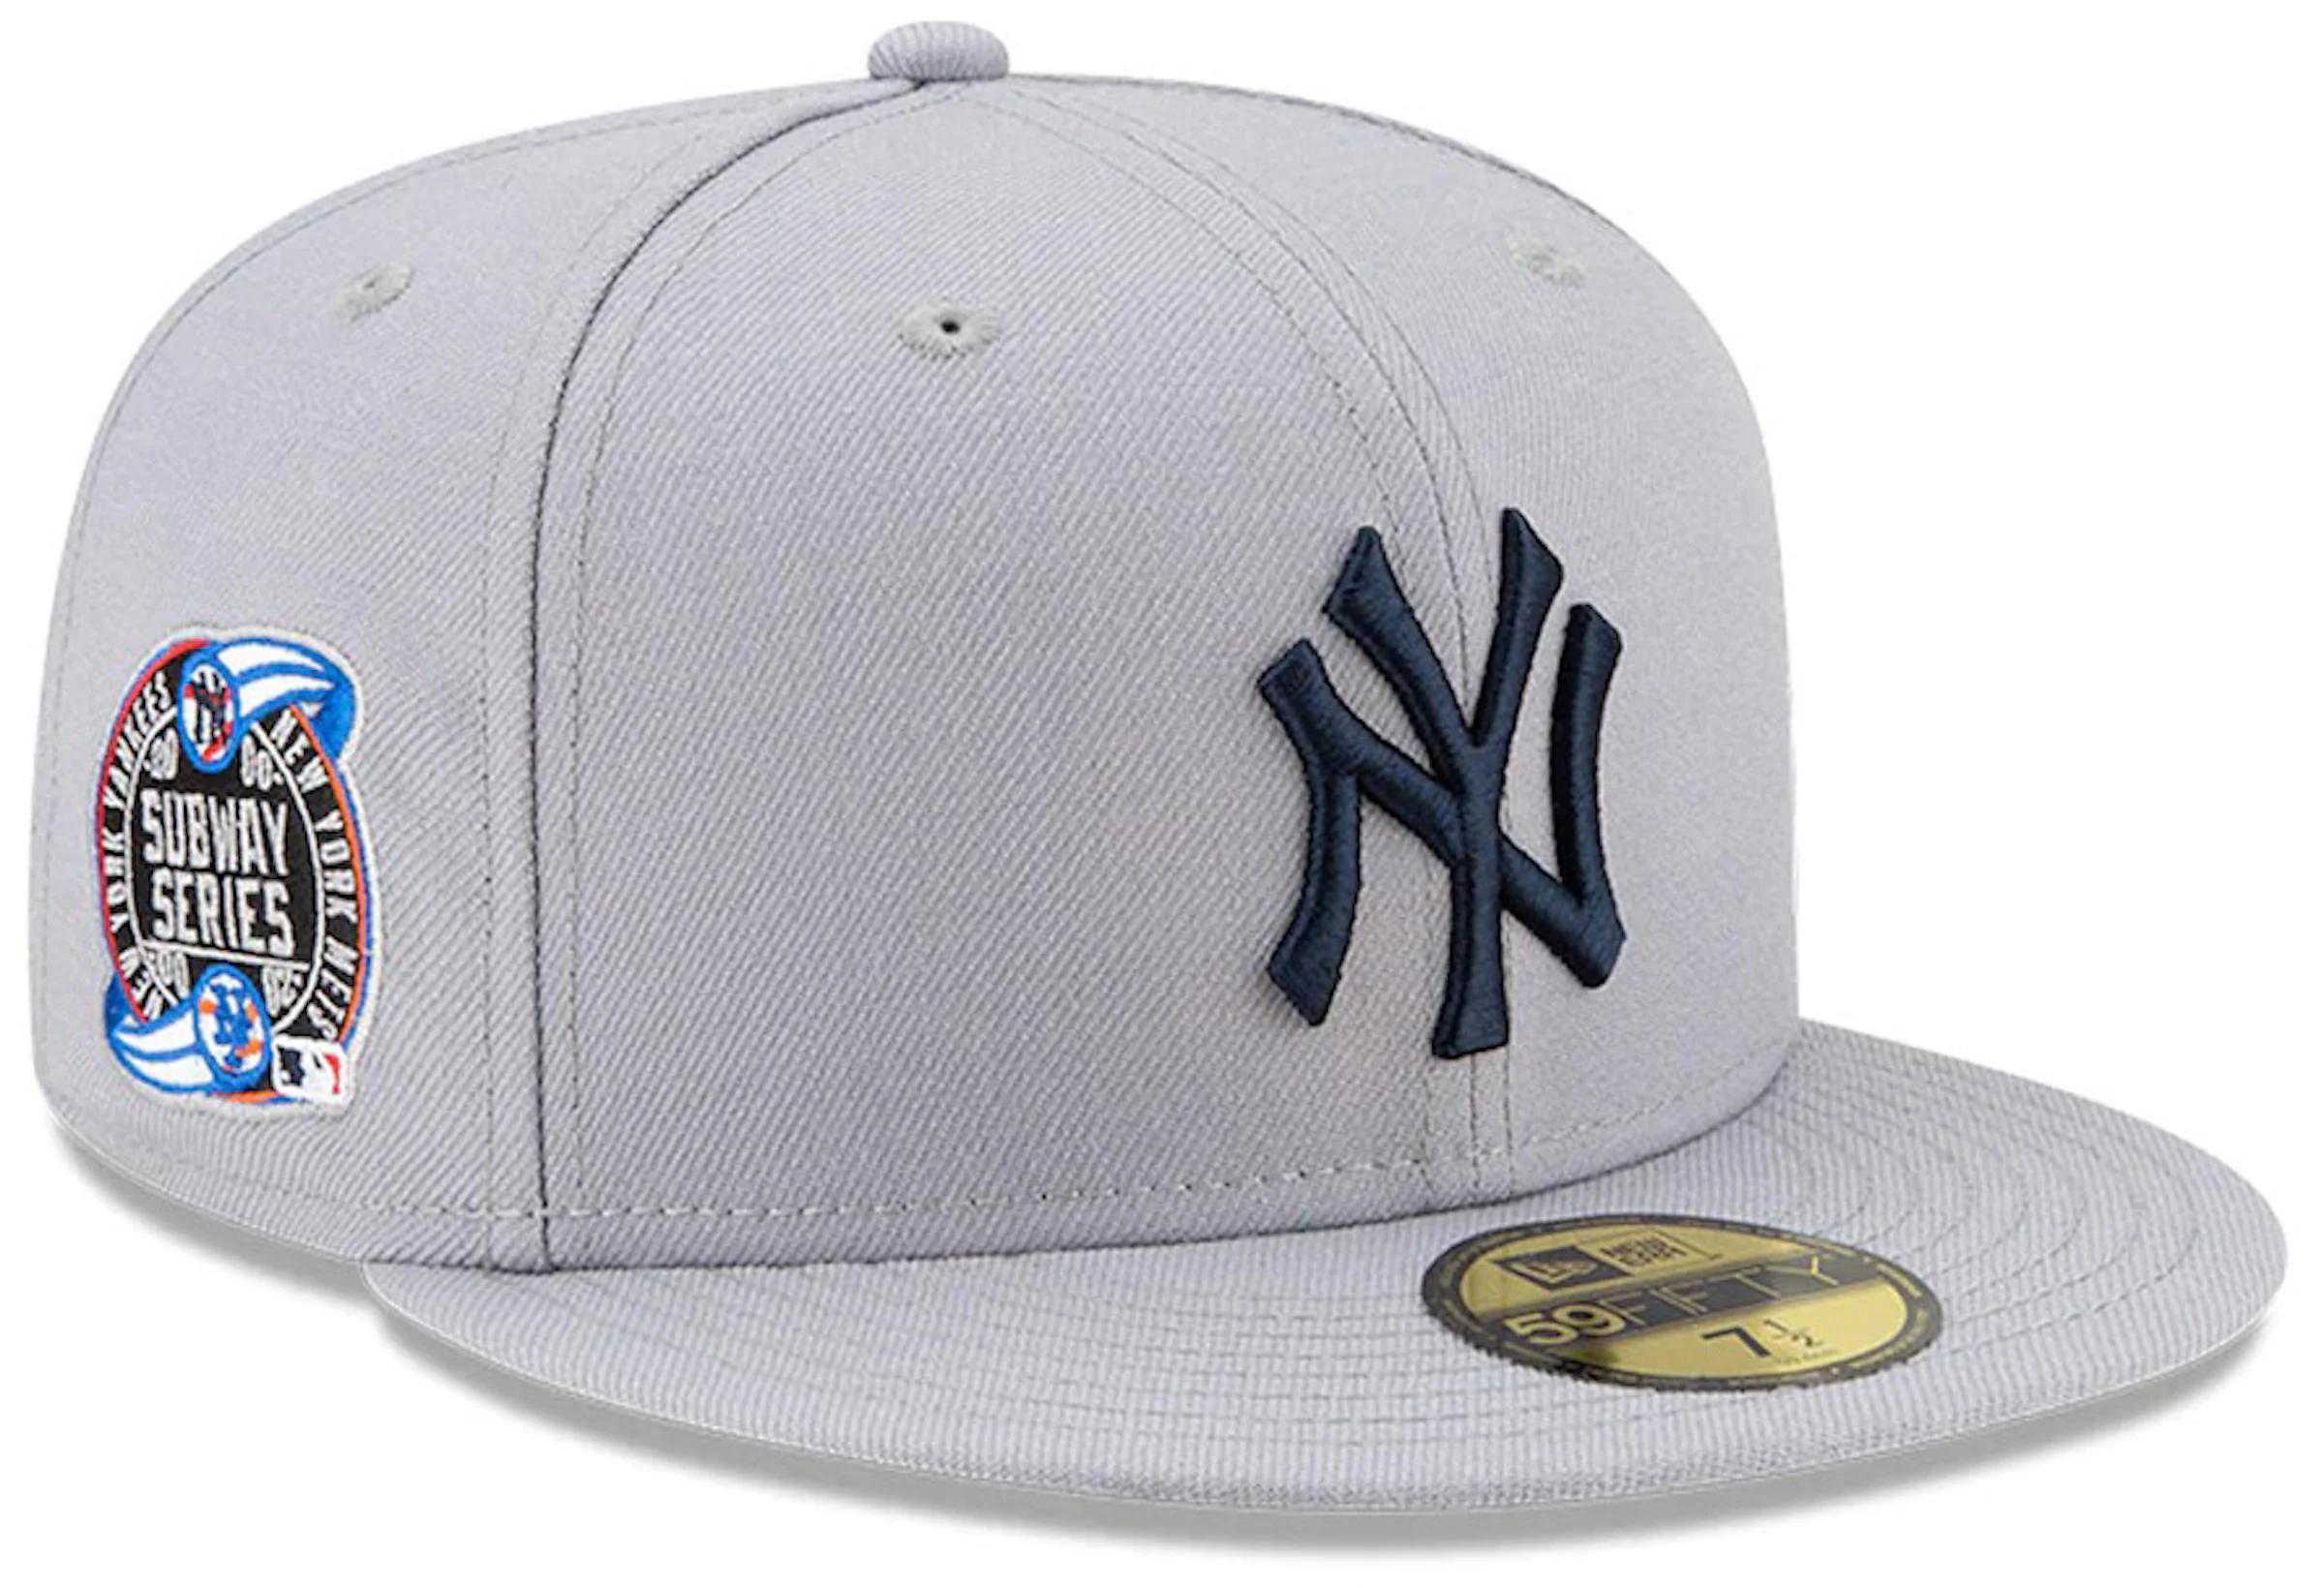 Awake Subway Series New York Yankees New Era Fitted Cap Gray